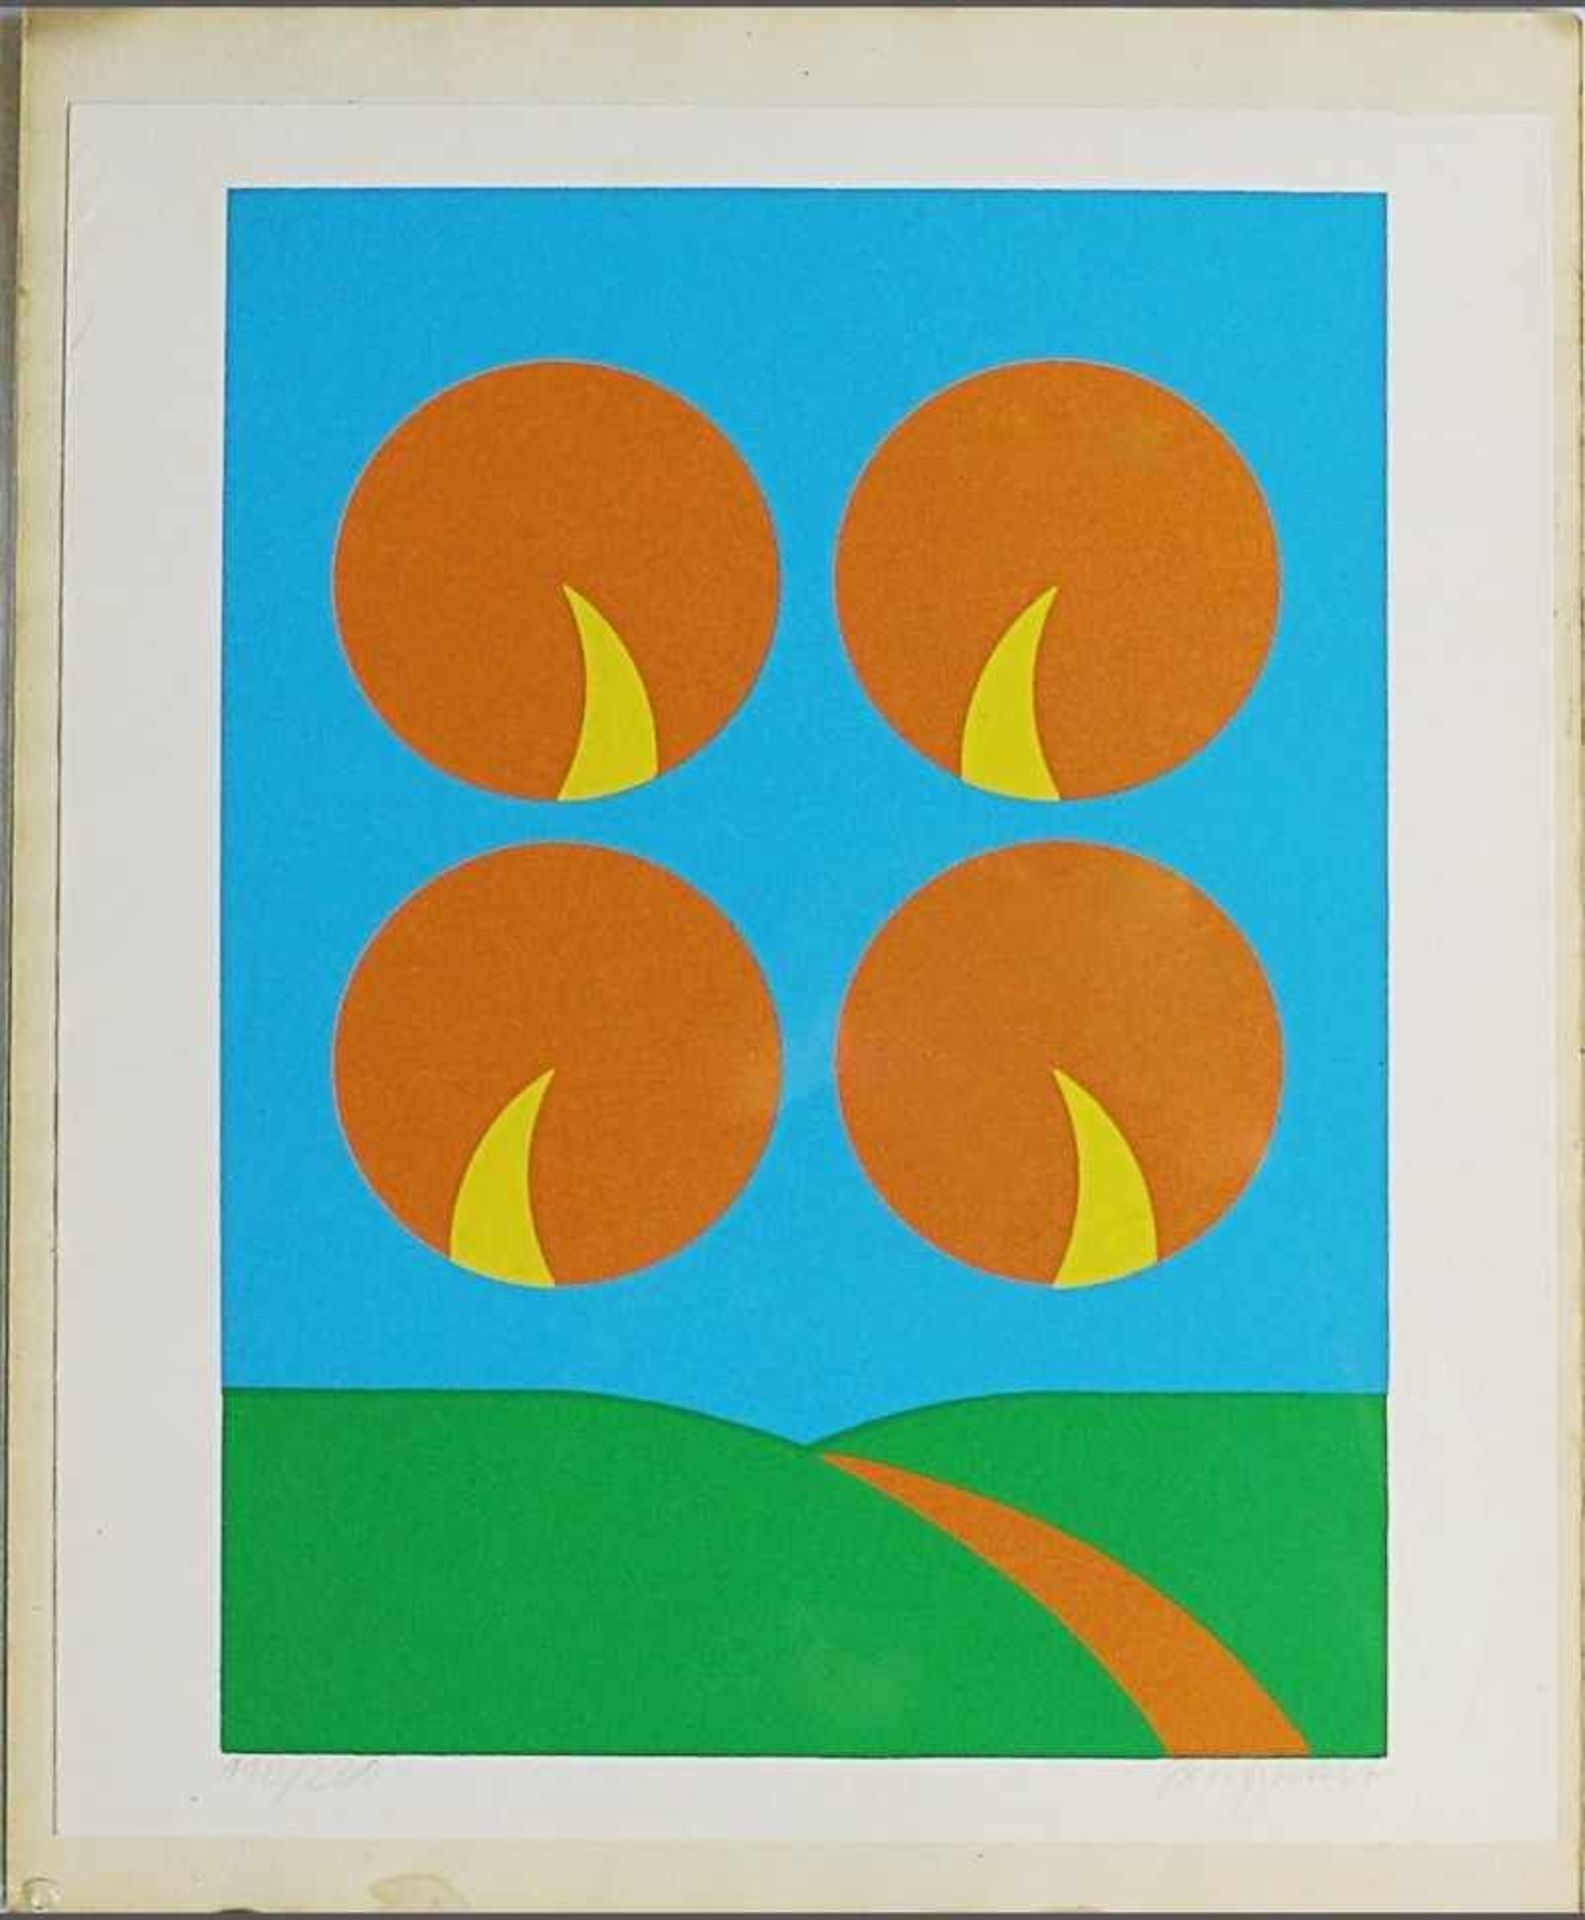 Burghart, Toni "Vier Kreise in der Landschaft", Farbserigrafie, li. un. num. 118/220, re. un. sign.,